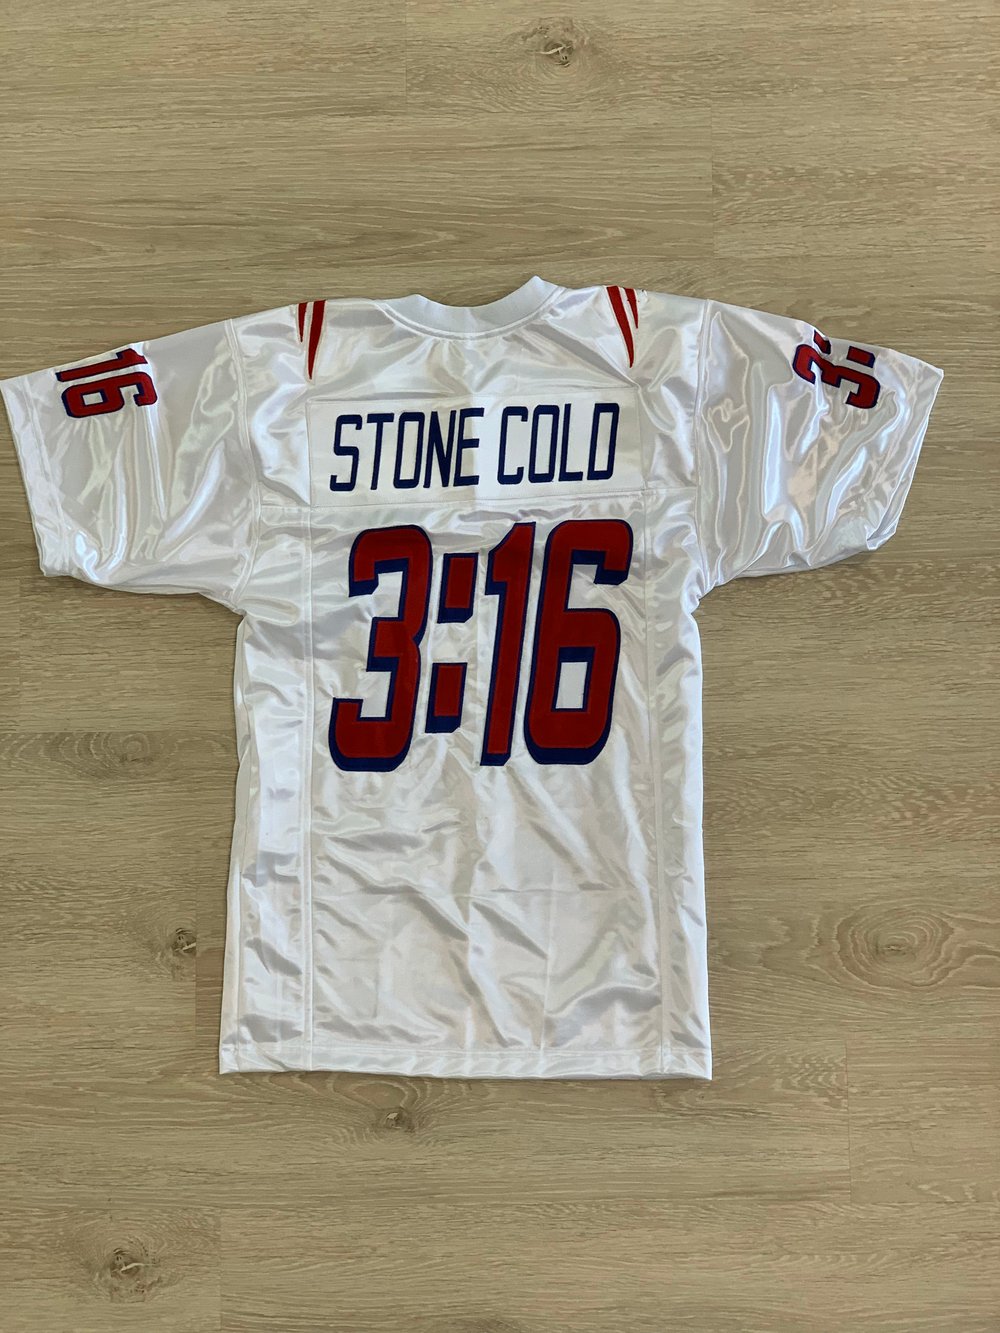 Stone Cold Steve Austin PATS Football jersey